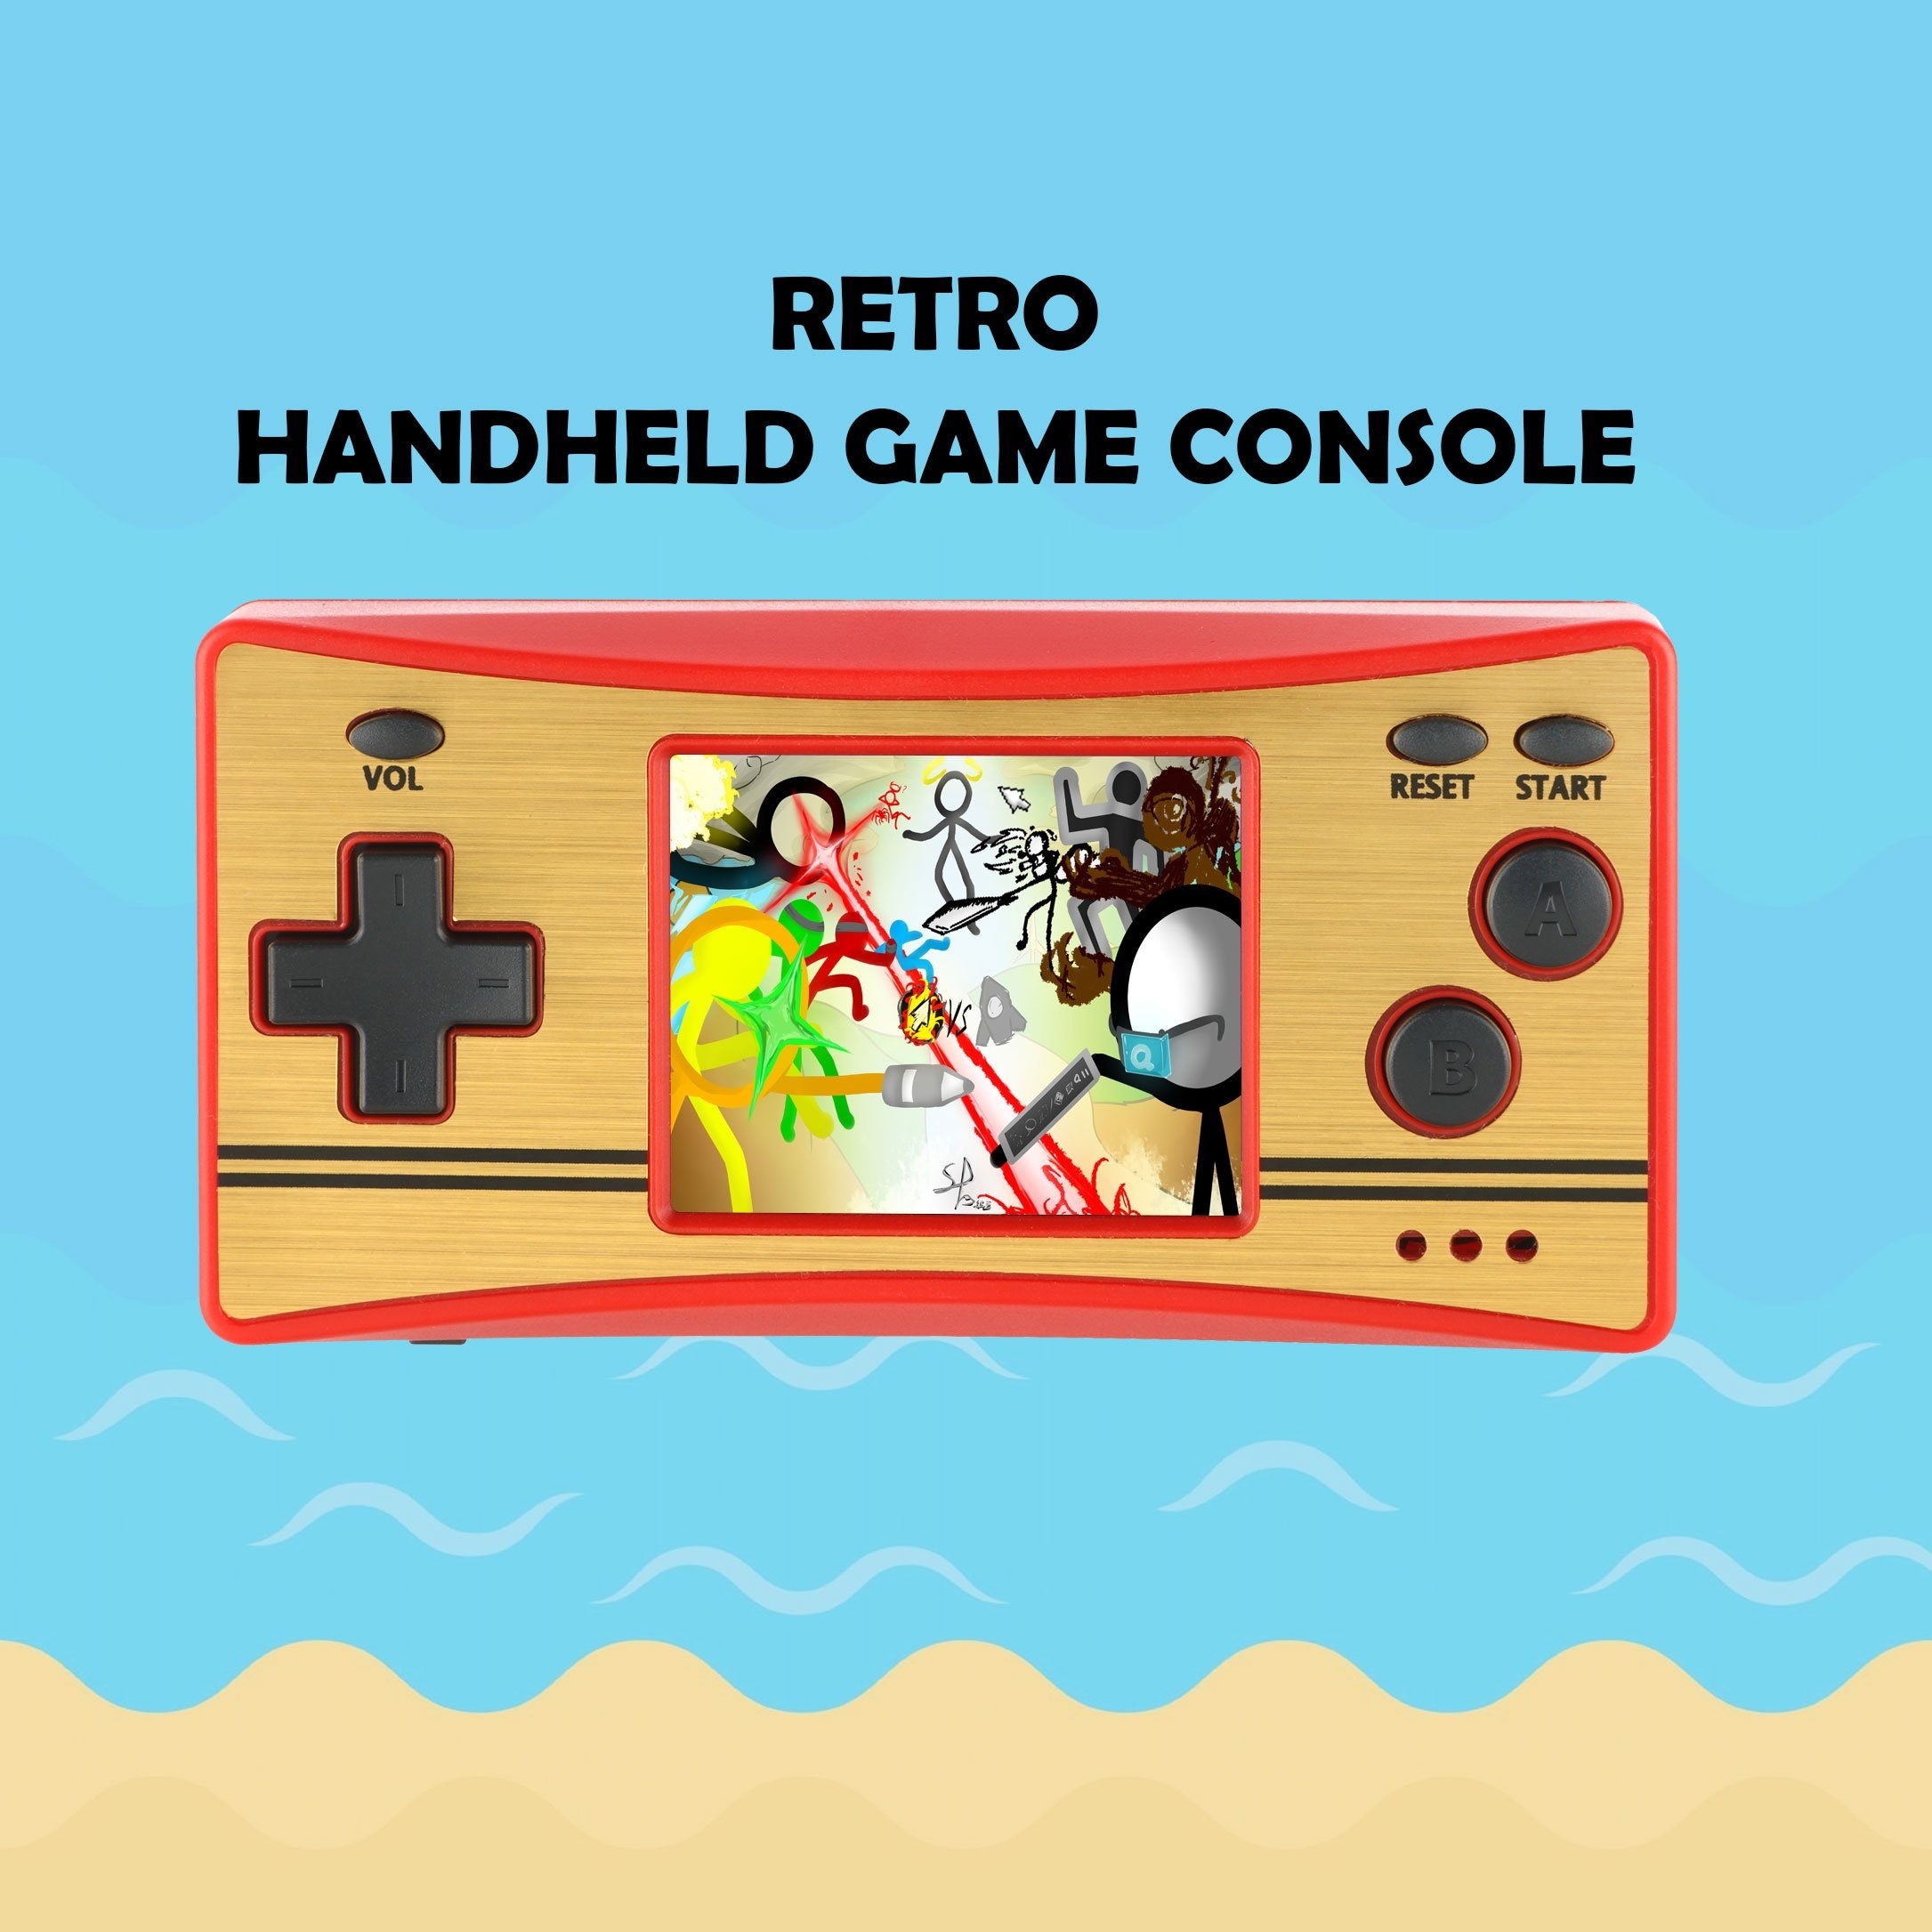 Cadeau geek : Mini console de jeux rétro arcade 8-Bit